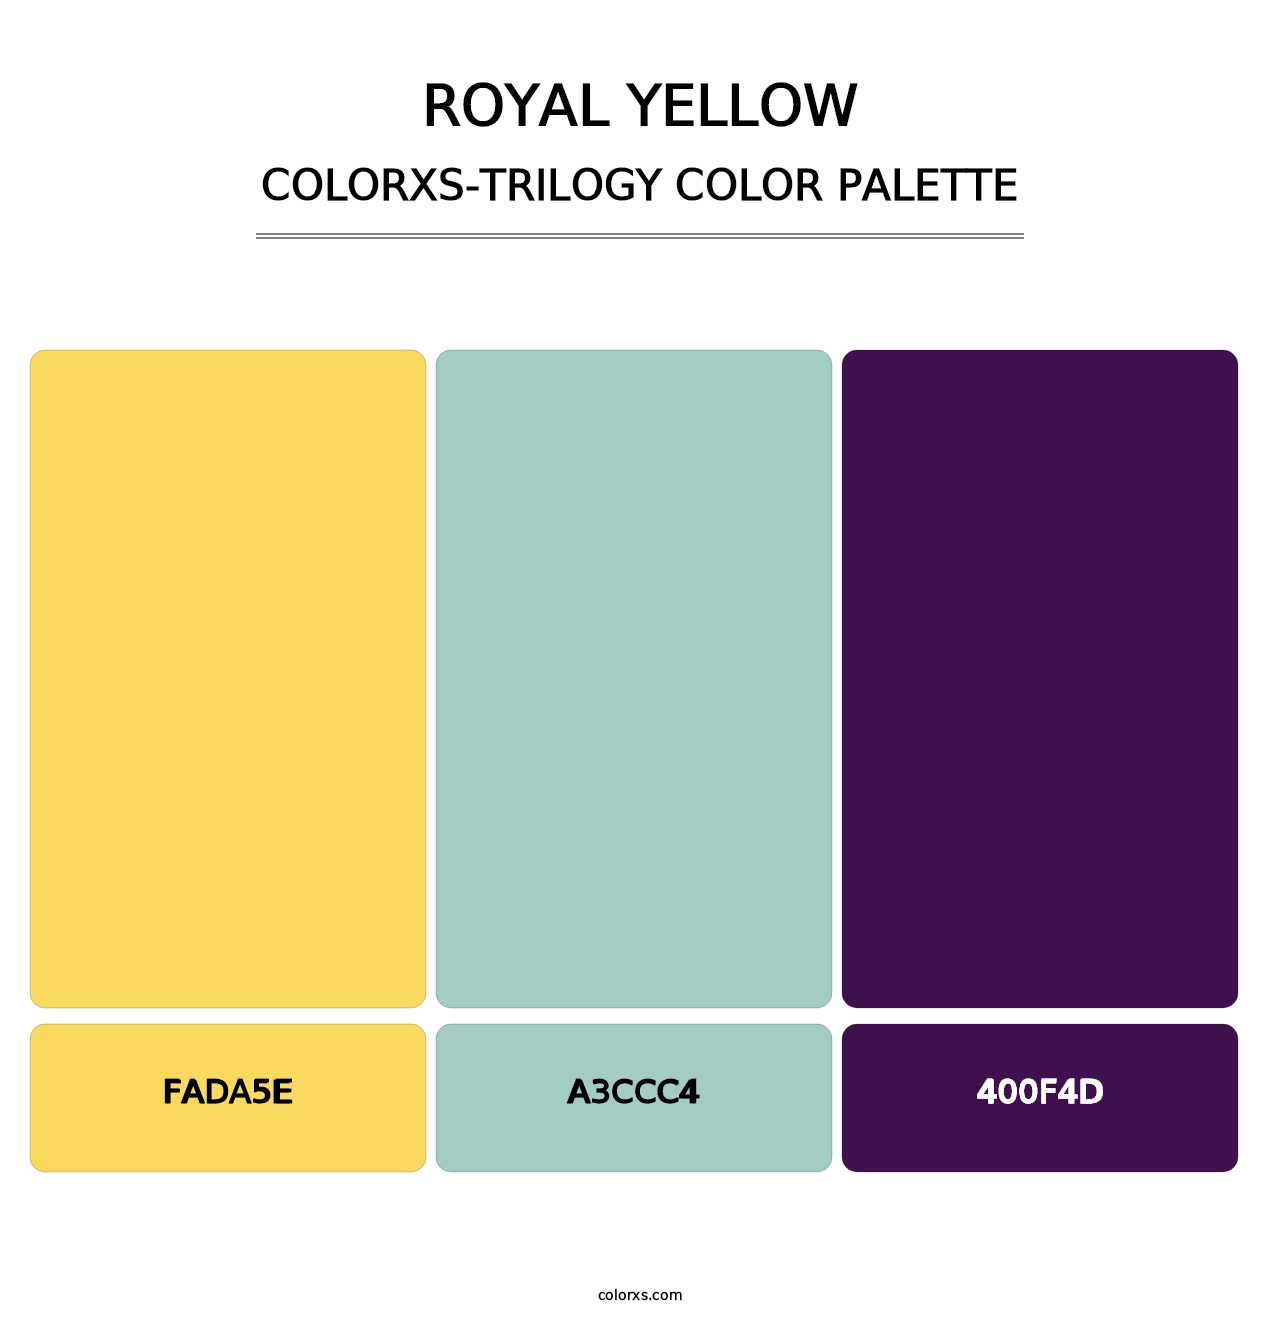 Royal Yellow - Colorxs Trilogy Palette